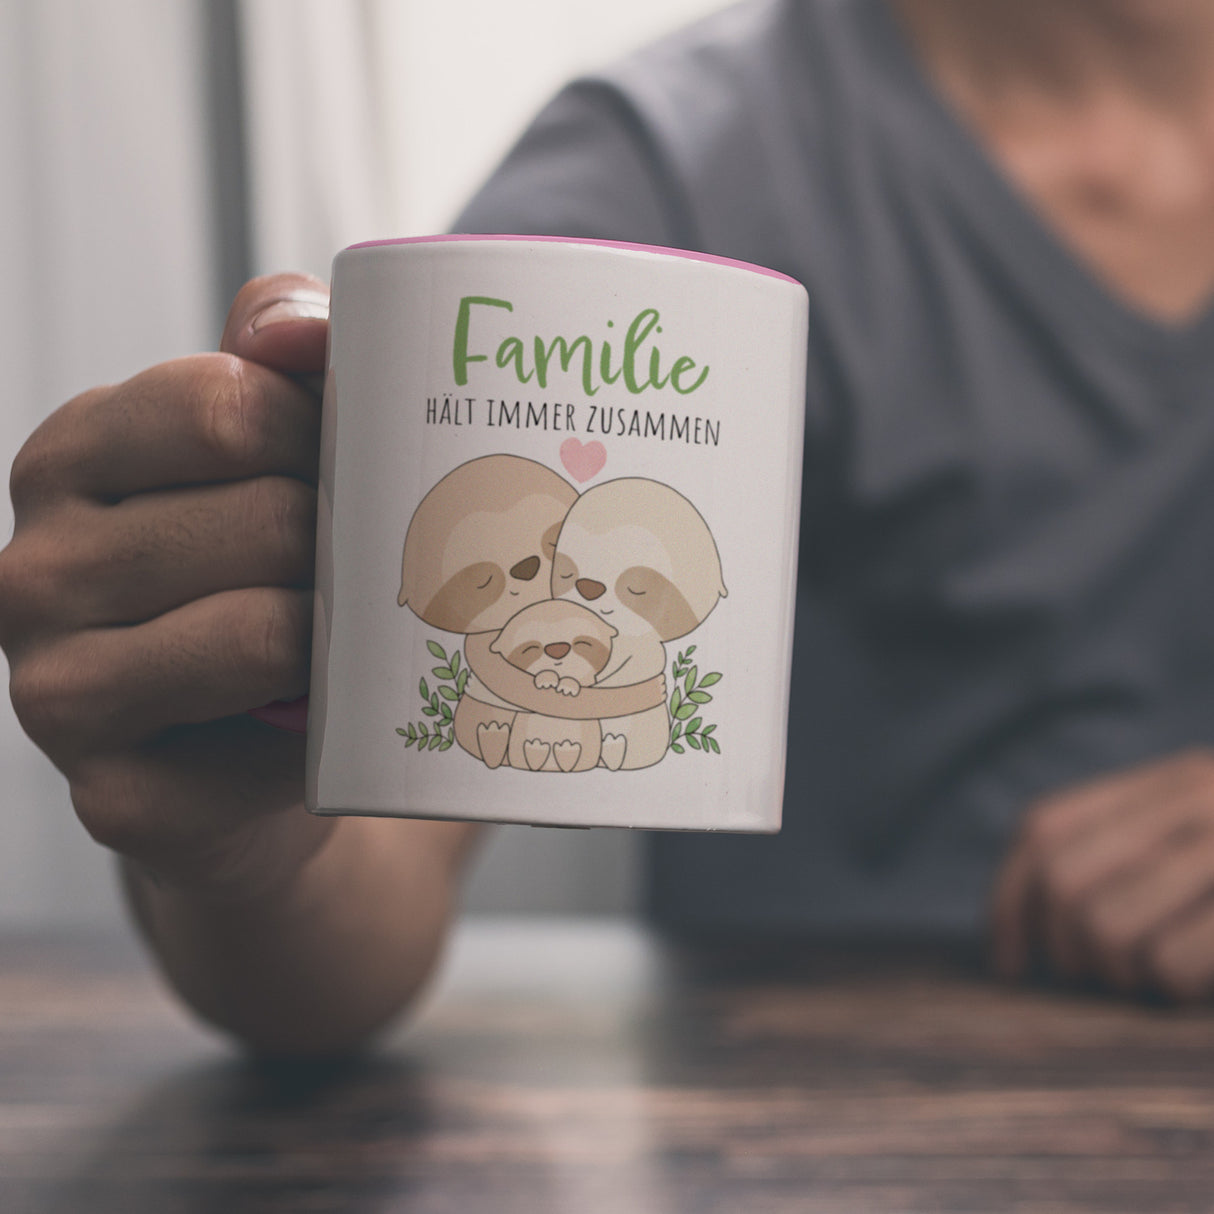 Faultier Familie Kaffeebecher mit Spruch Familie hält immer zusammen